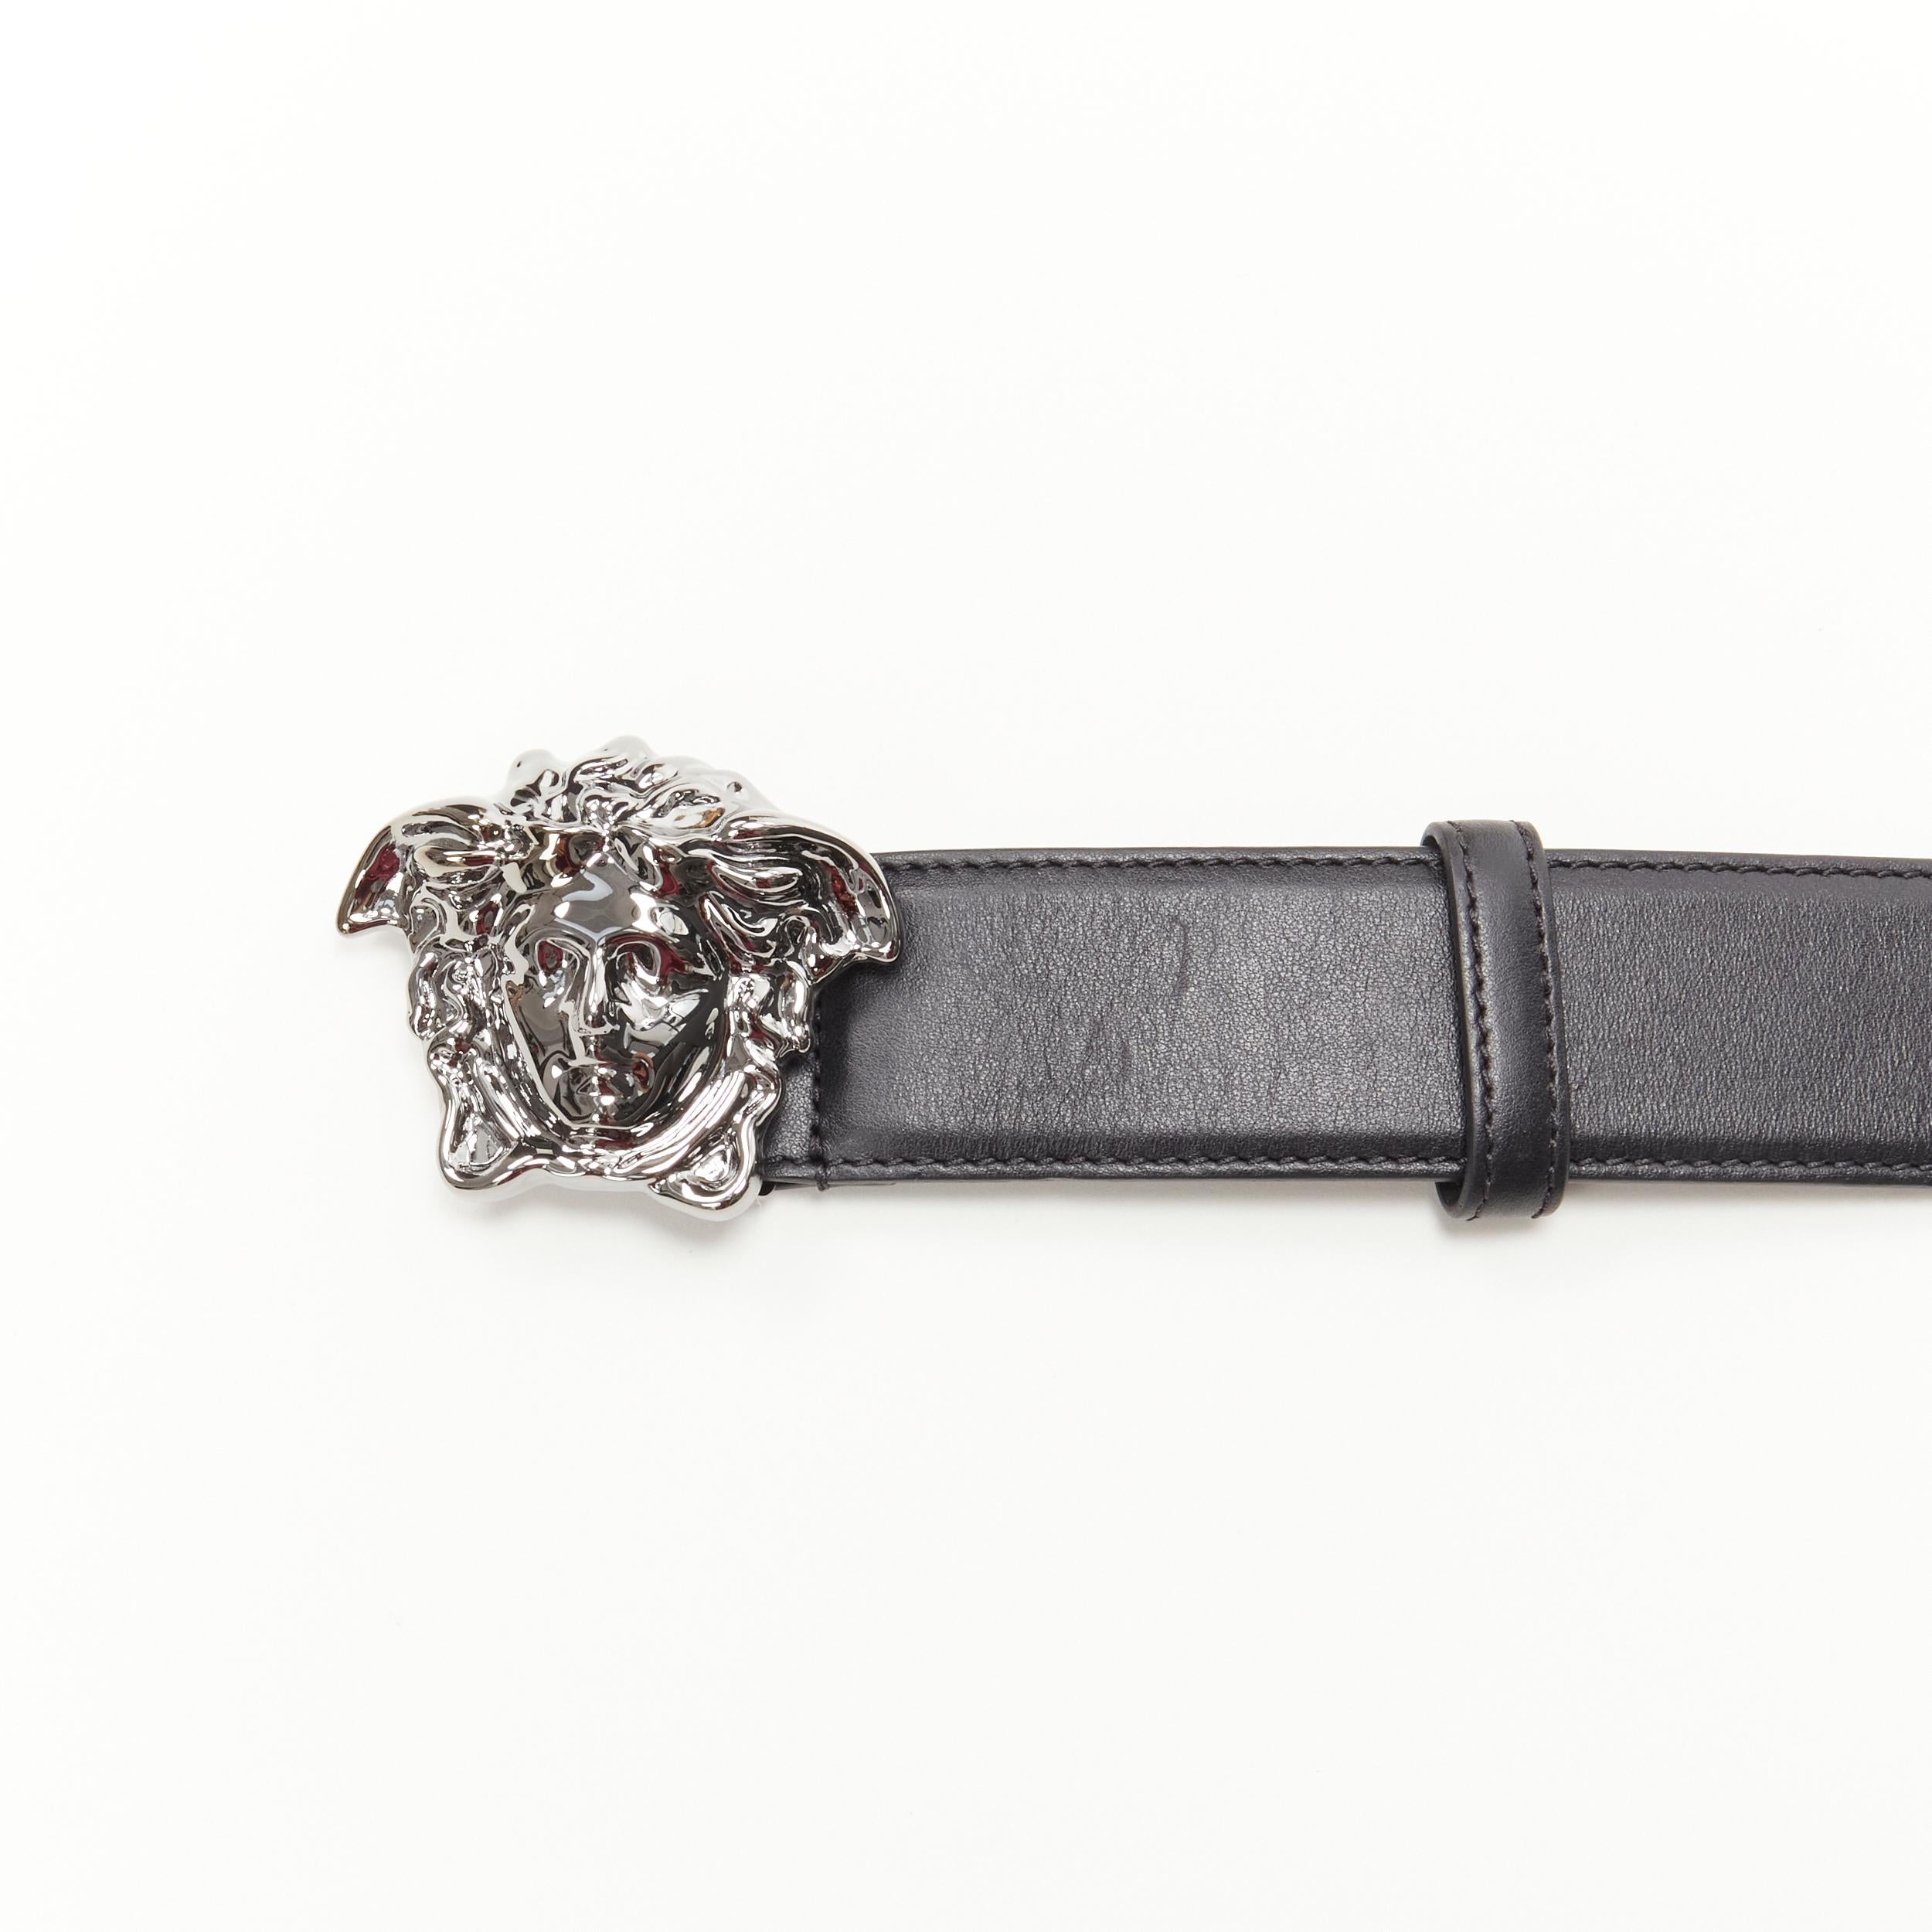 Men's new VERSACE La Medusa ruthenium silver buckle black leather belt 110cm 42-46